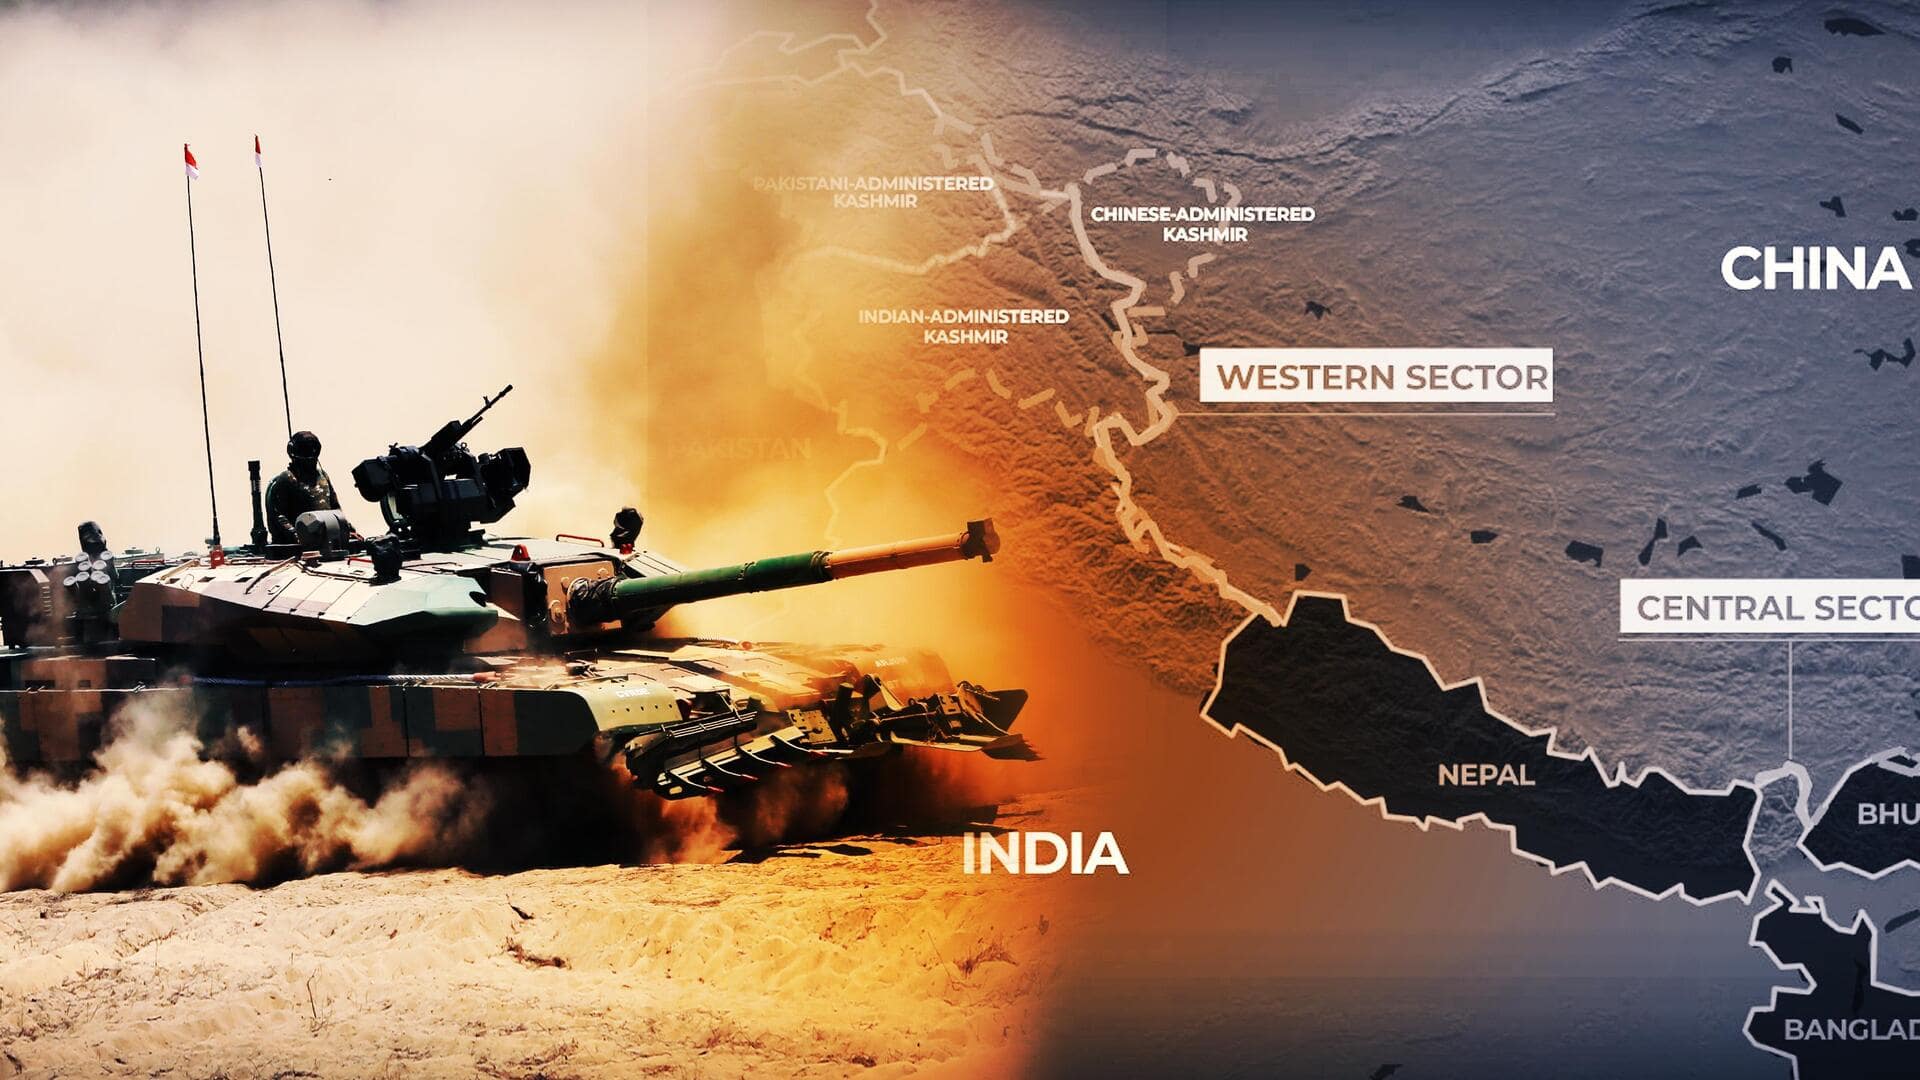 भारत ने चीन सीमा के पास स्थापित की 2 रणनीतिक सेना टैंक रिपेयर यूनिट